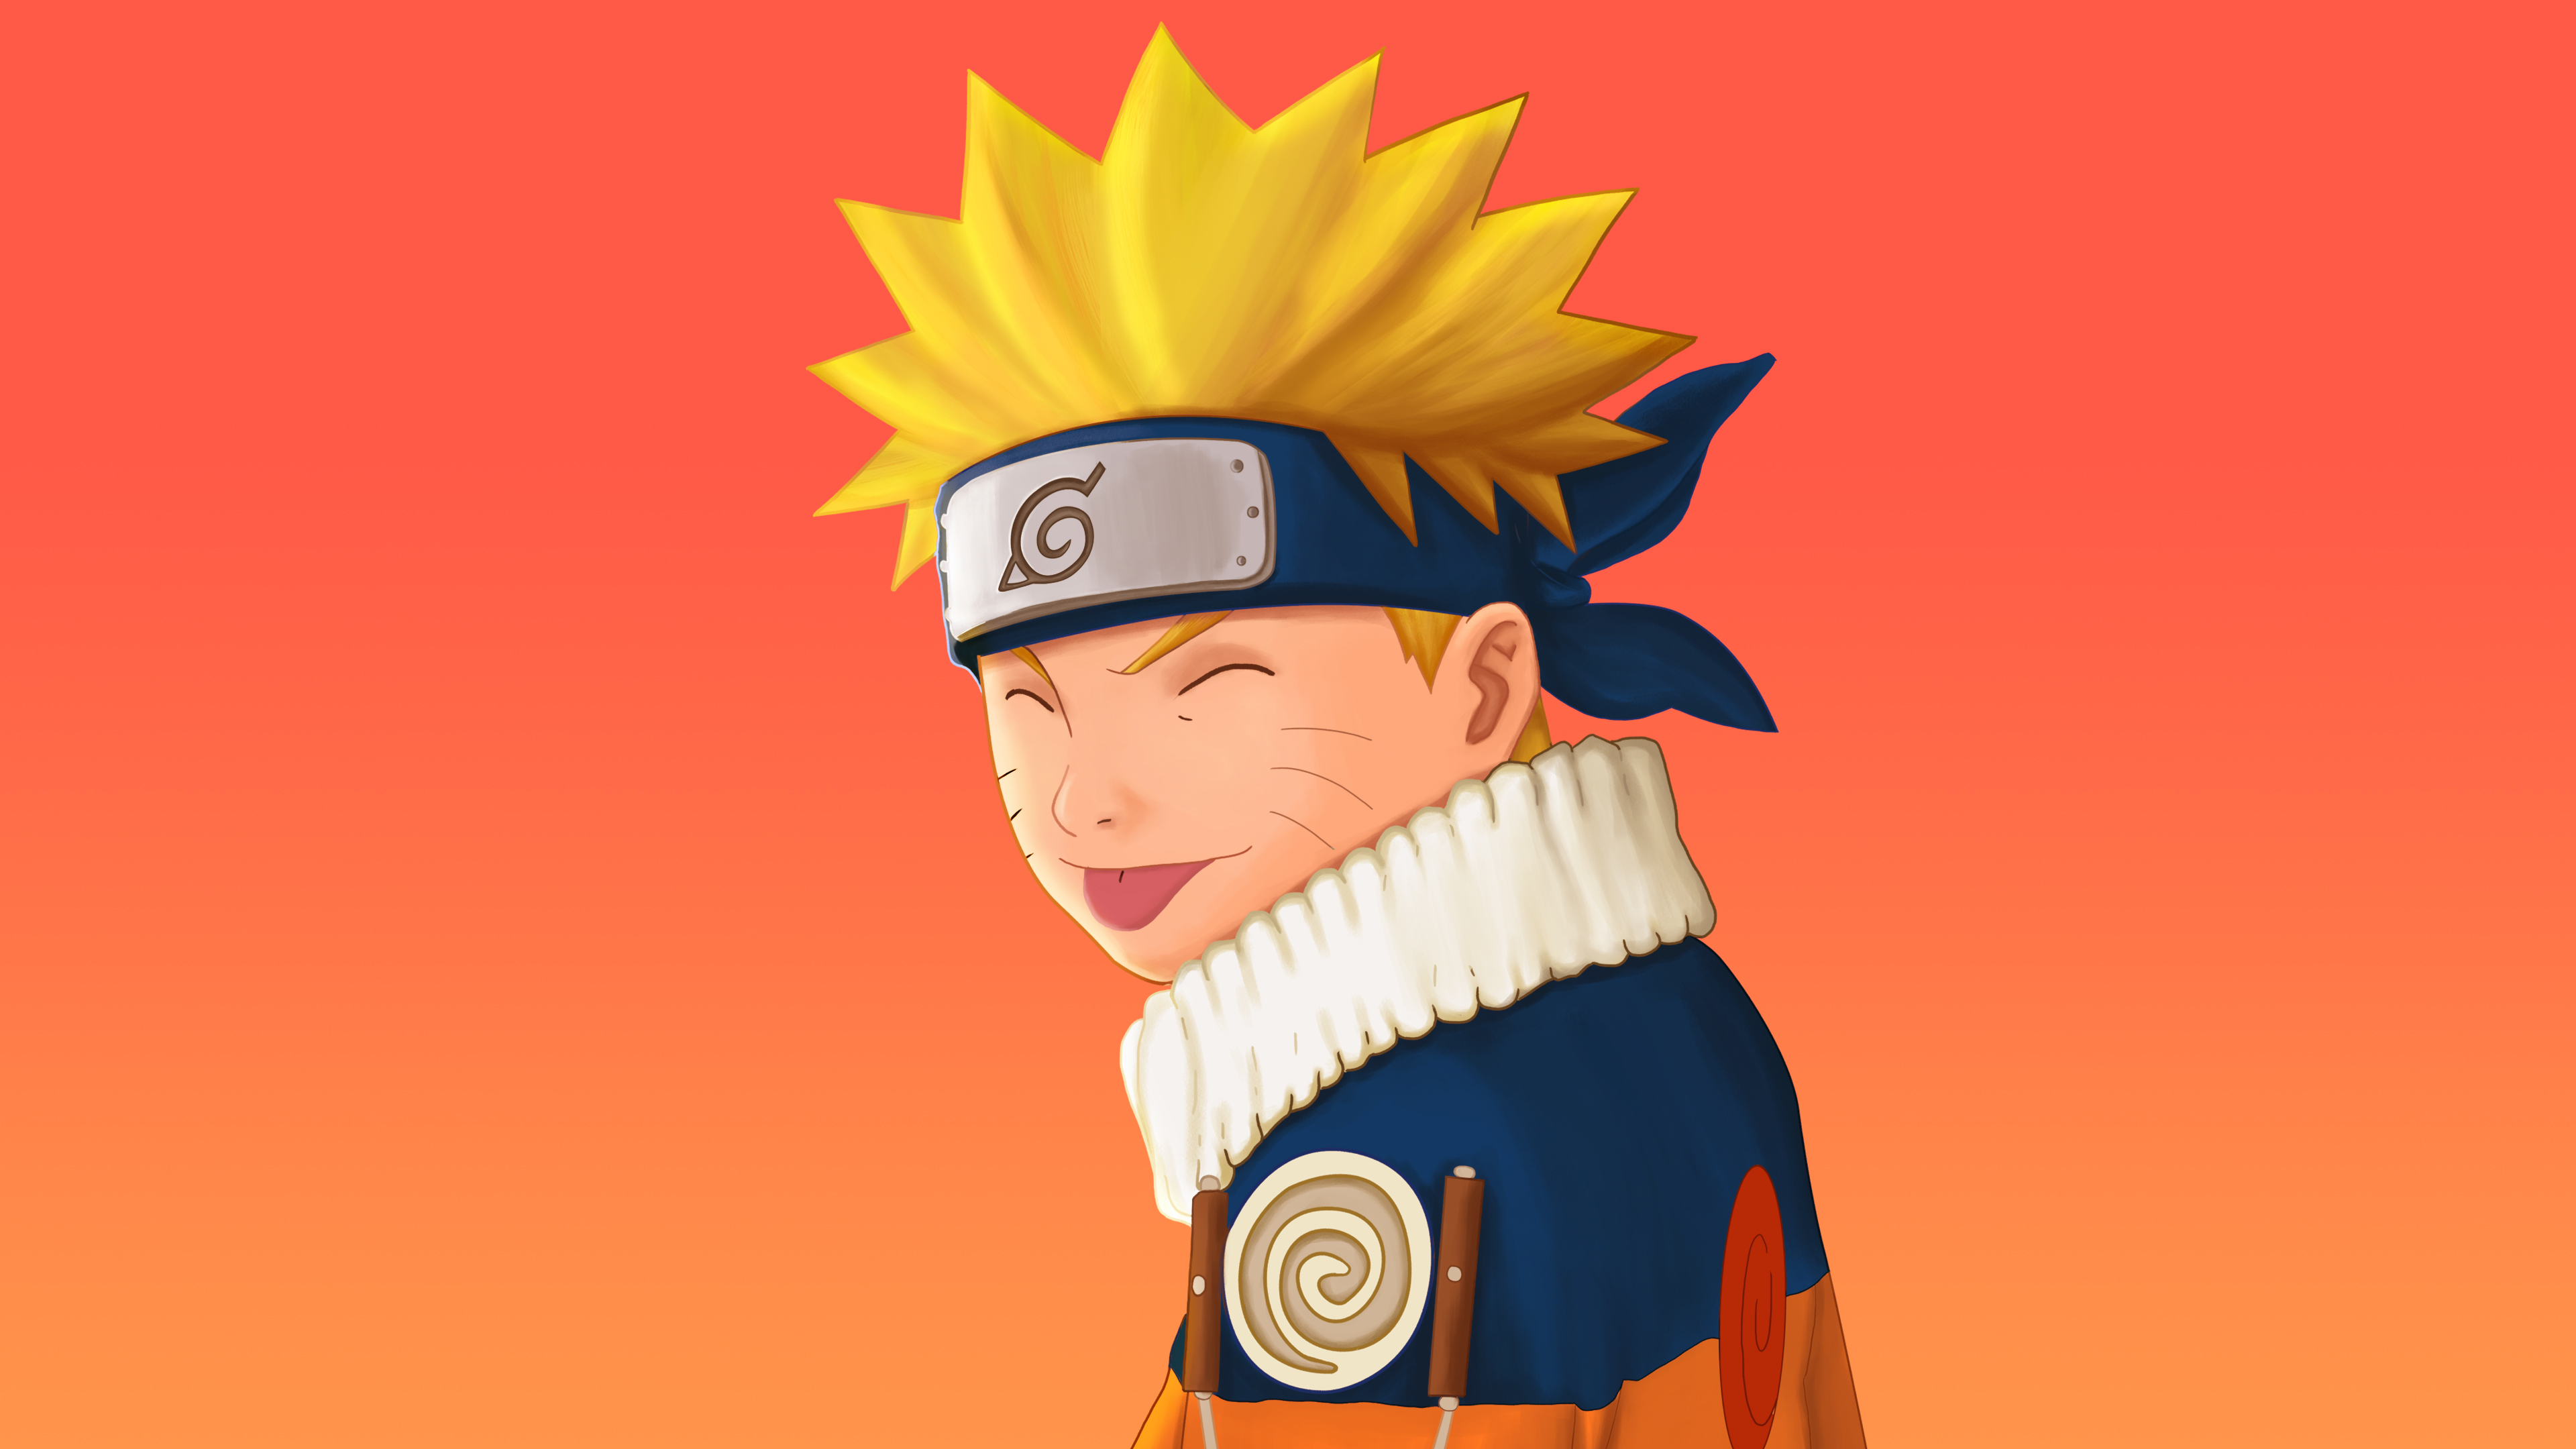 Bạn là fan cuồng của Naruto Uzumaki và muốn sở hữu ngay một bức hình đầy sáng tạo và độc đáo của nhân vật này? Hãy tìm đến trang web Ishan730 của chúng tôi để tìm kiếm bộ sưu tập ảnh Naruto Uzumaki đầy ấn tượng và đầy tinh tế nhất.